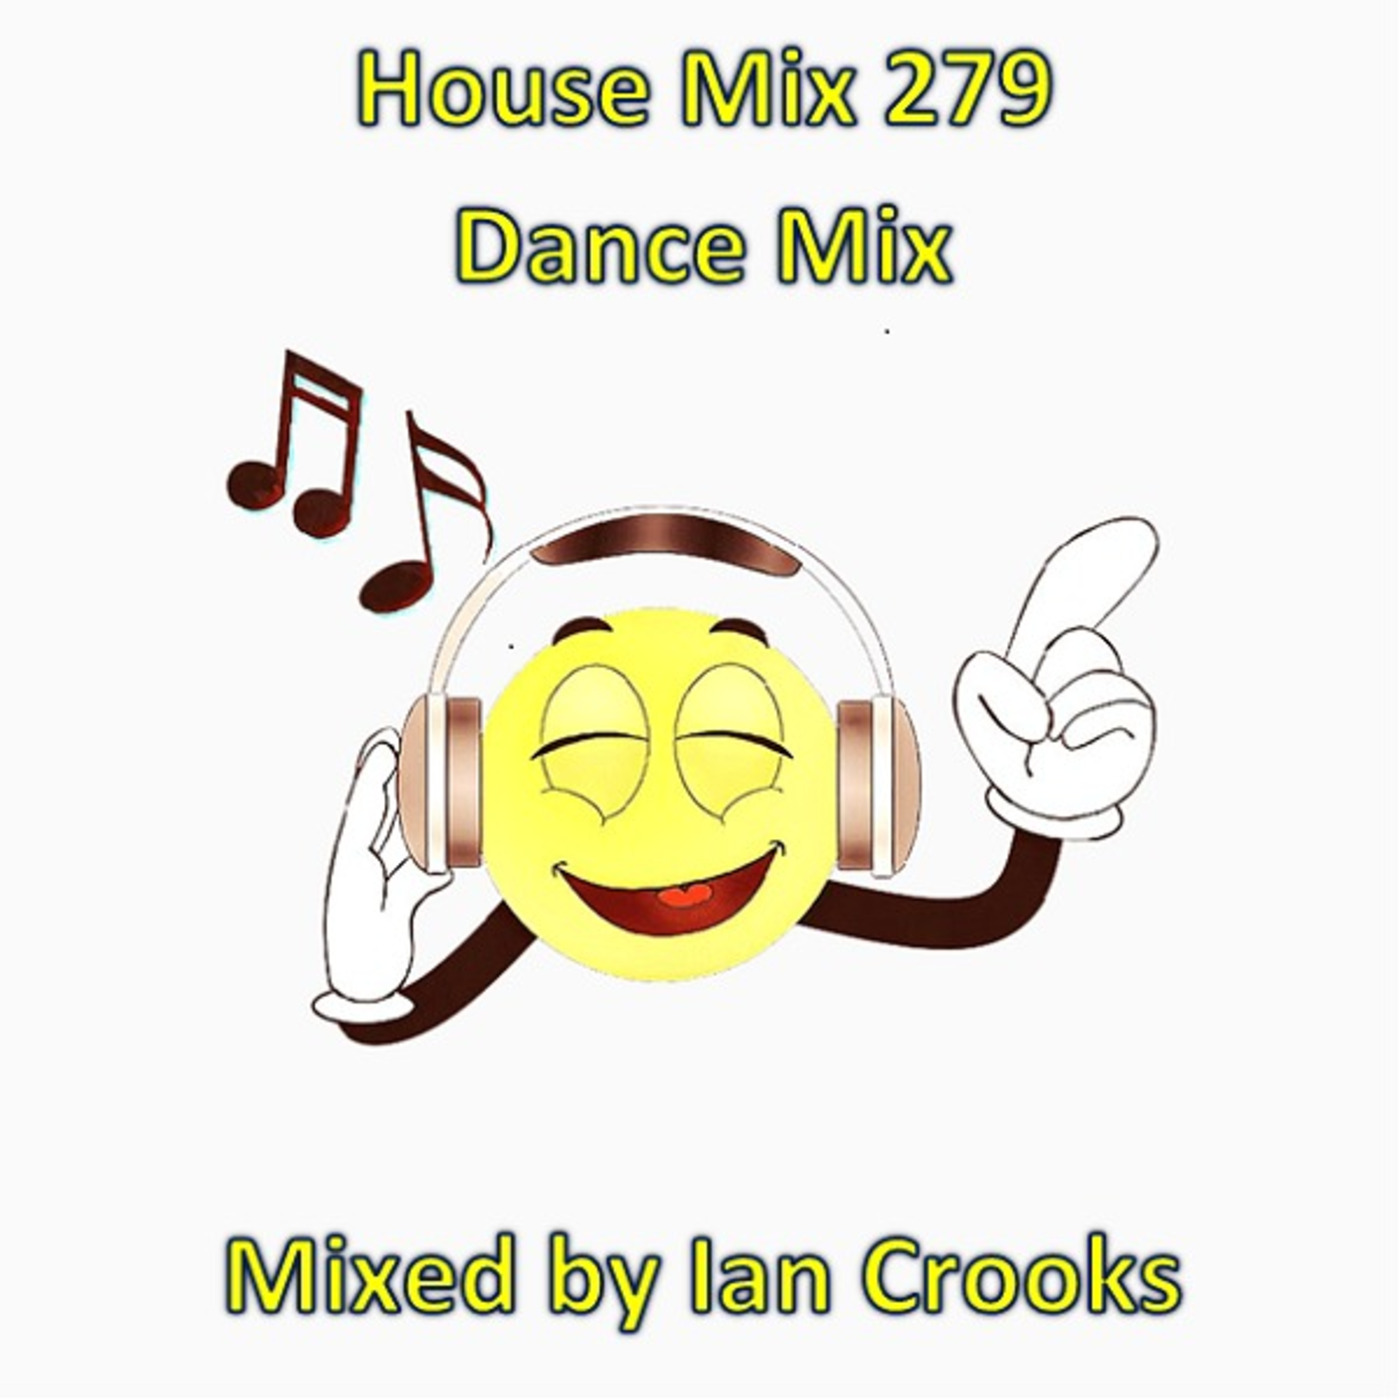 Ian Crooks Mix 279 (Dance Mix)